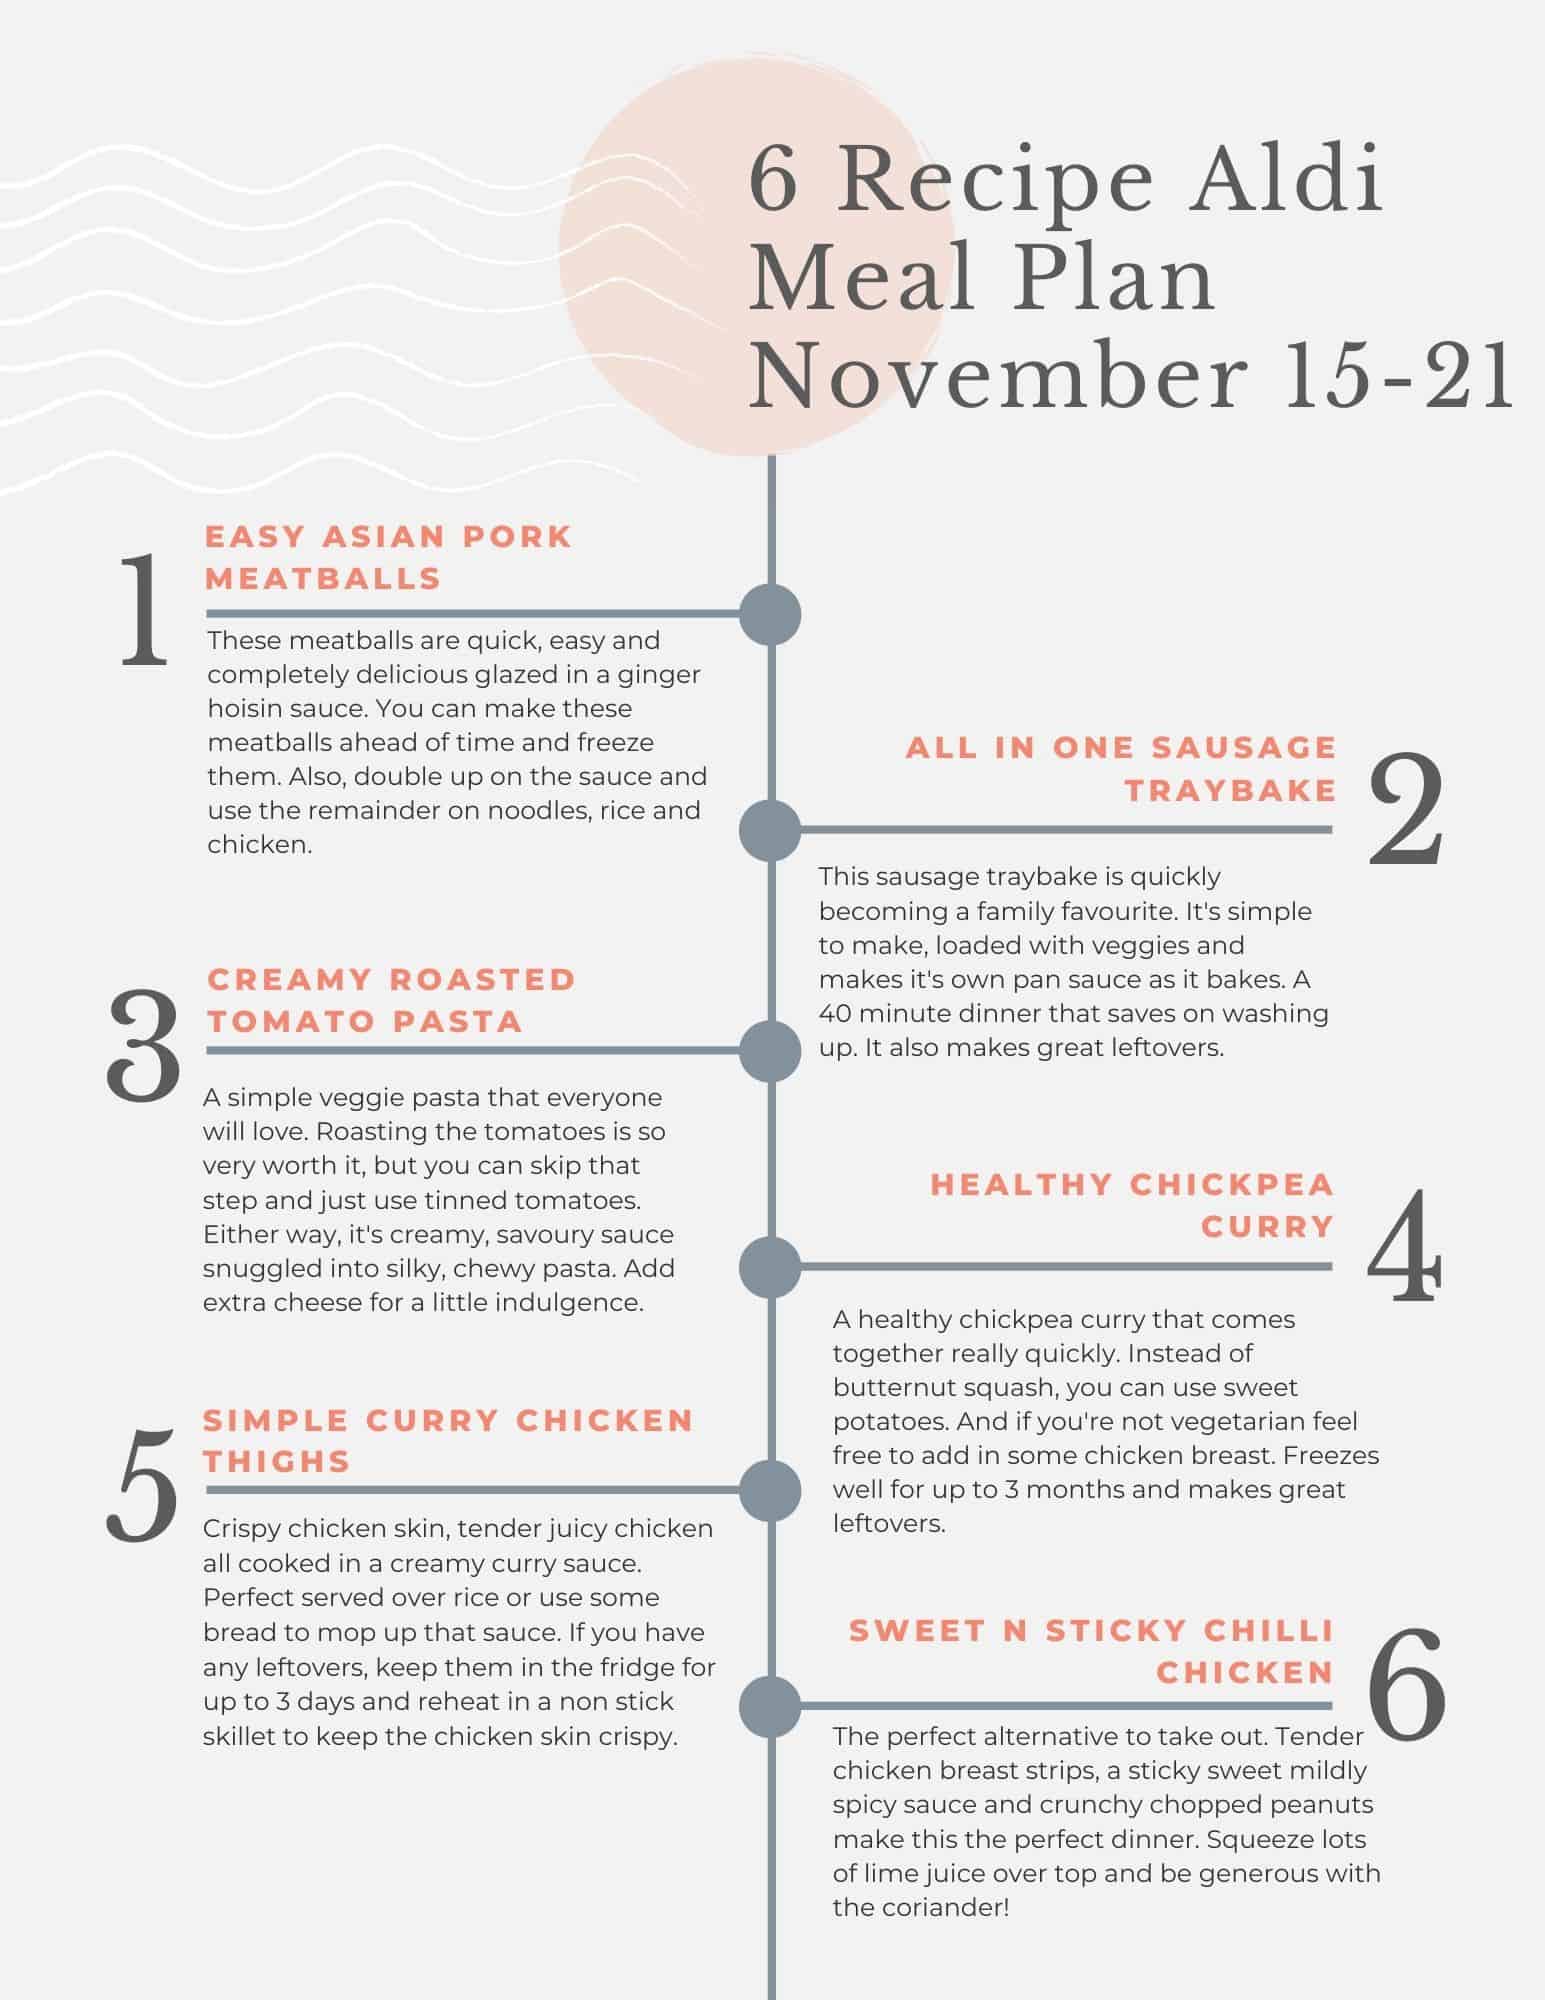 meal plan tip sheet for for November 15